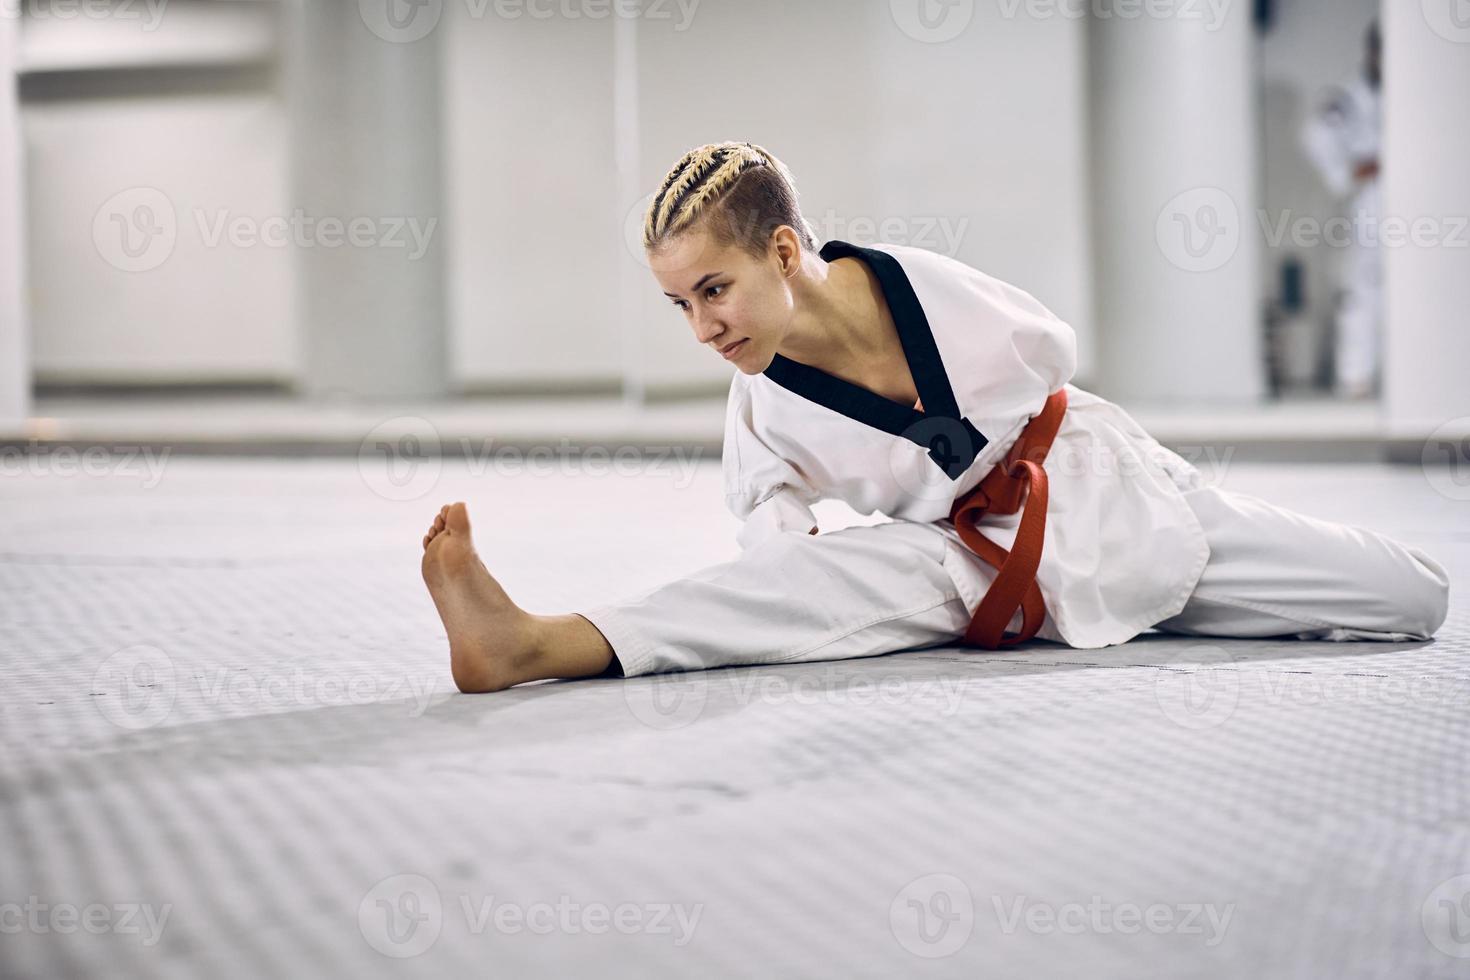 mulher atlética sem braços fazendo exercícios de alongamento no chão durante o treinamento de taekwondo. foto